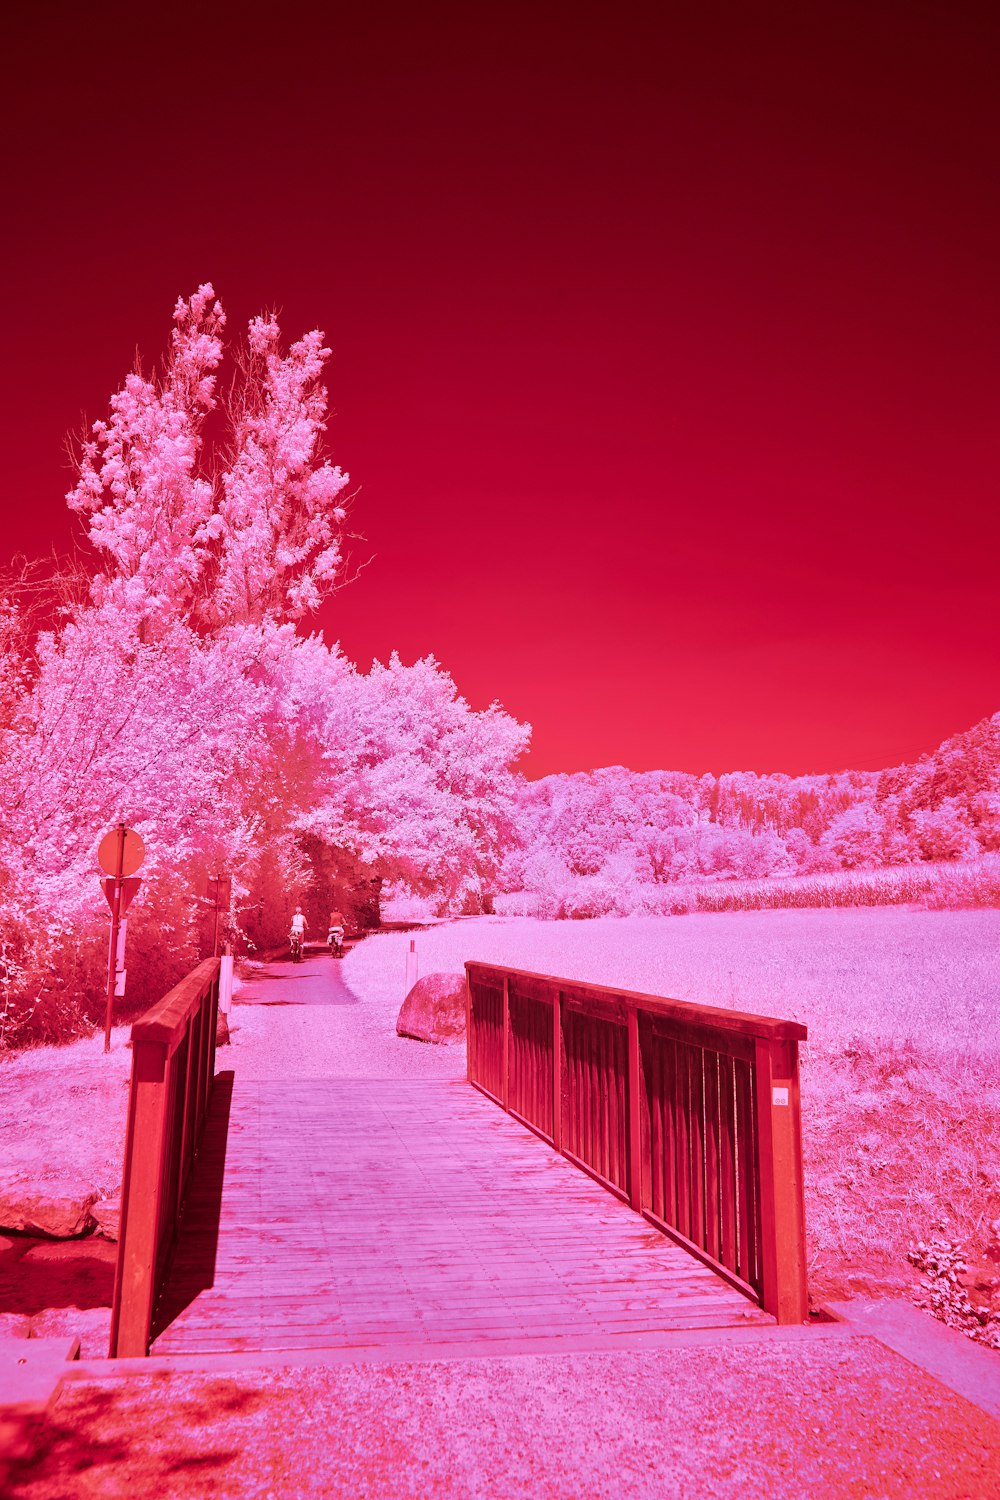 Una imagen infrarroja roja y rosa de un puente